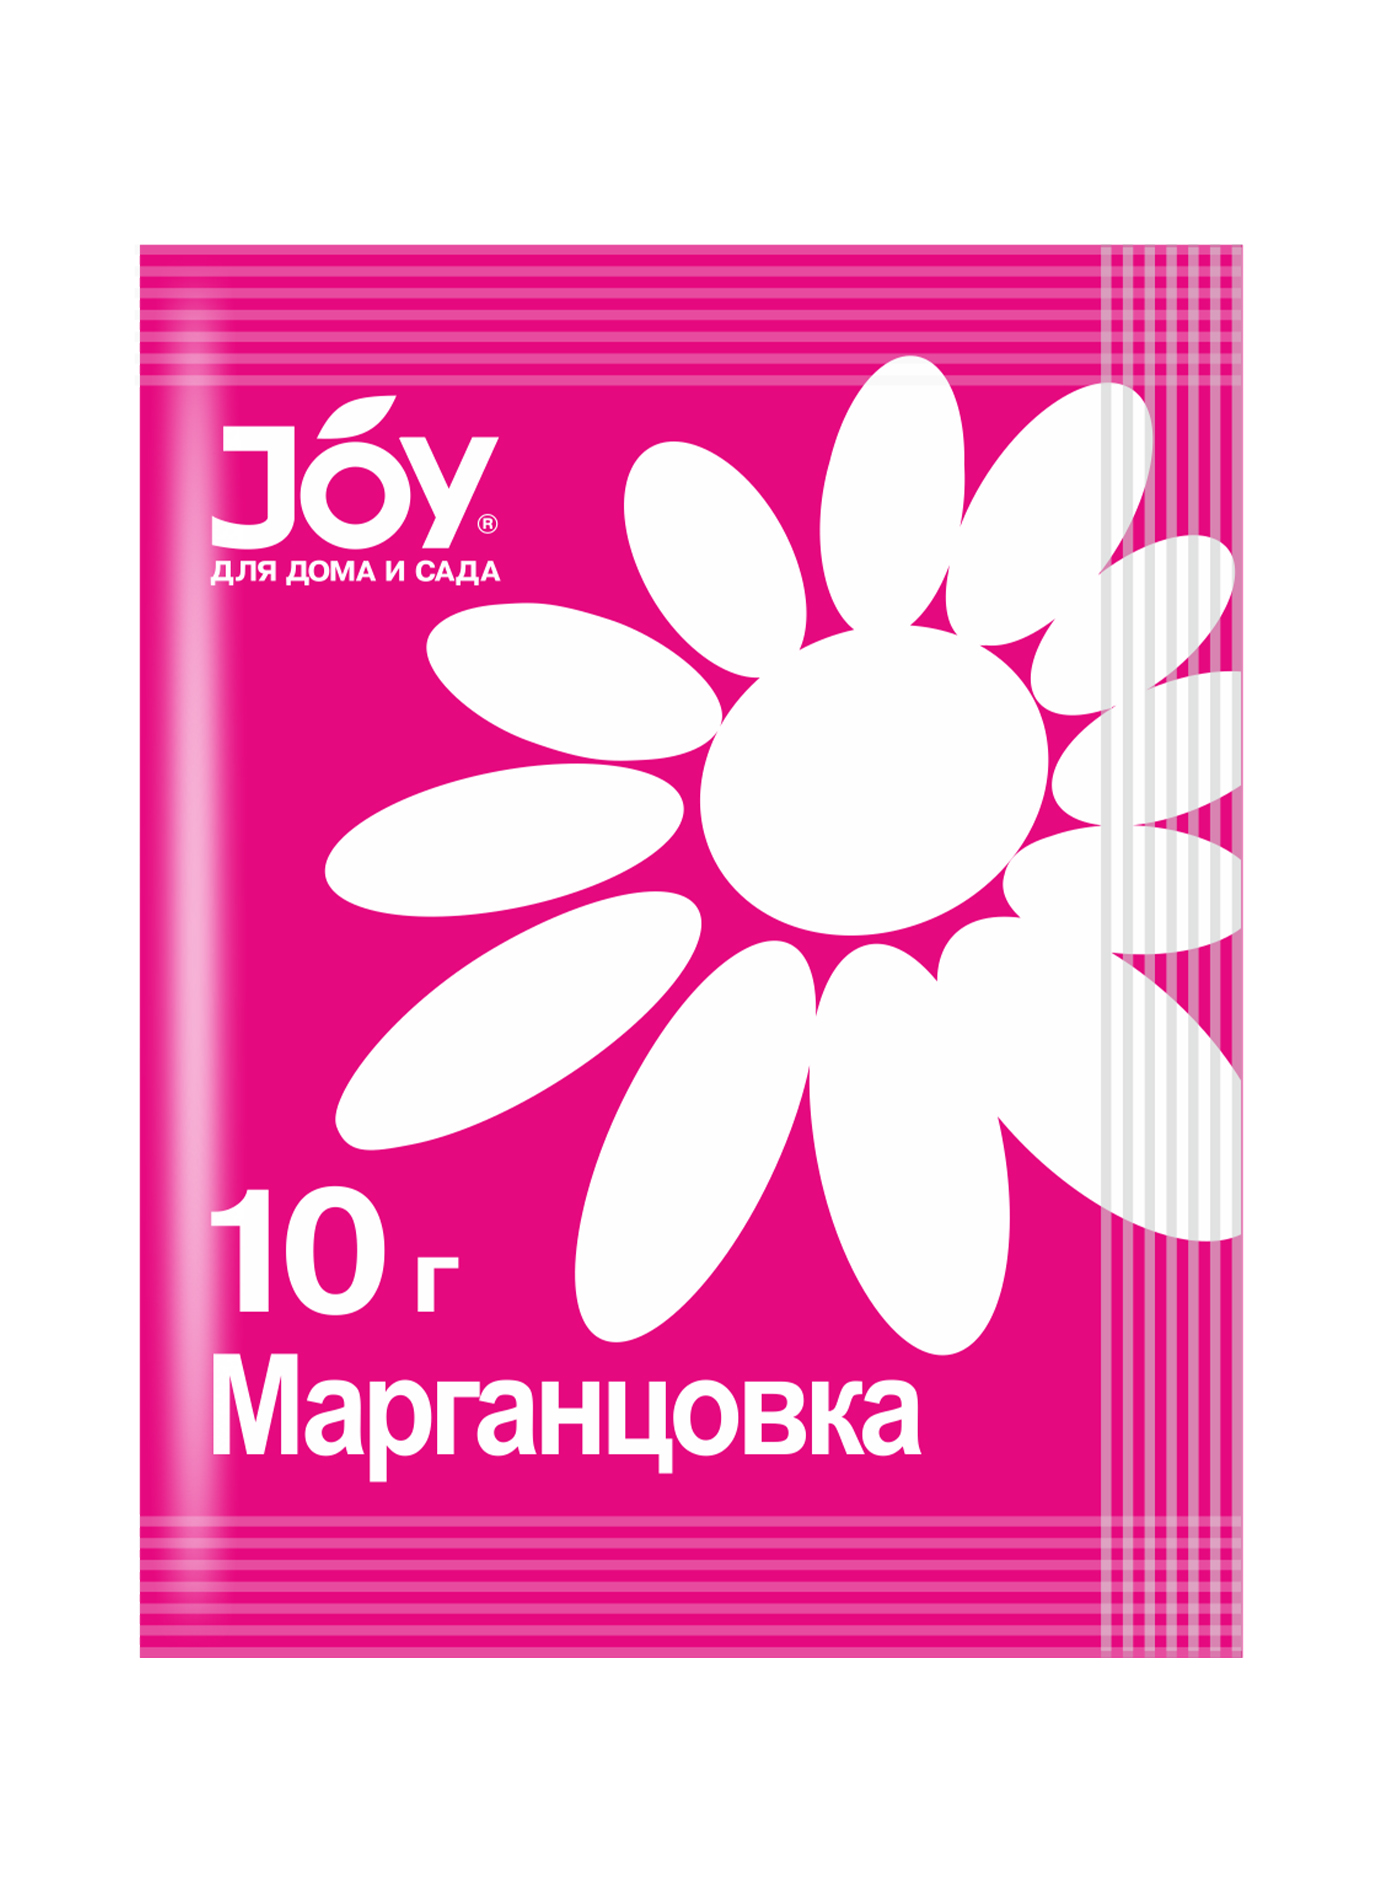 Антисептическое средство Марганцовка, 10г, JOY